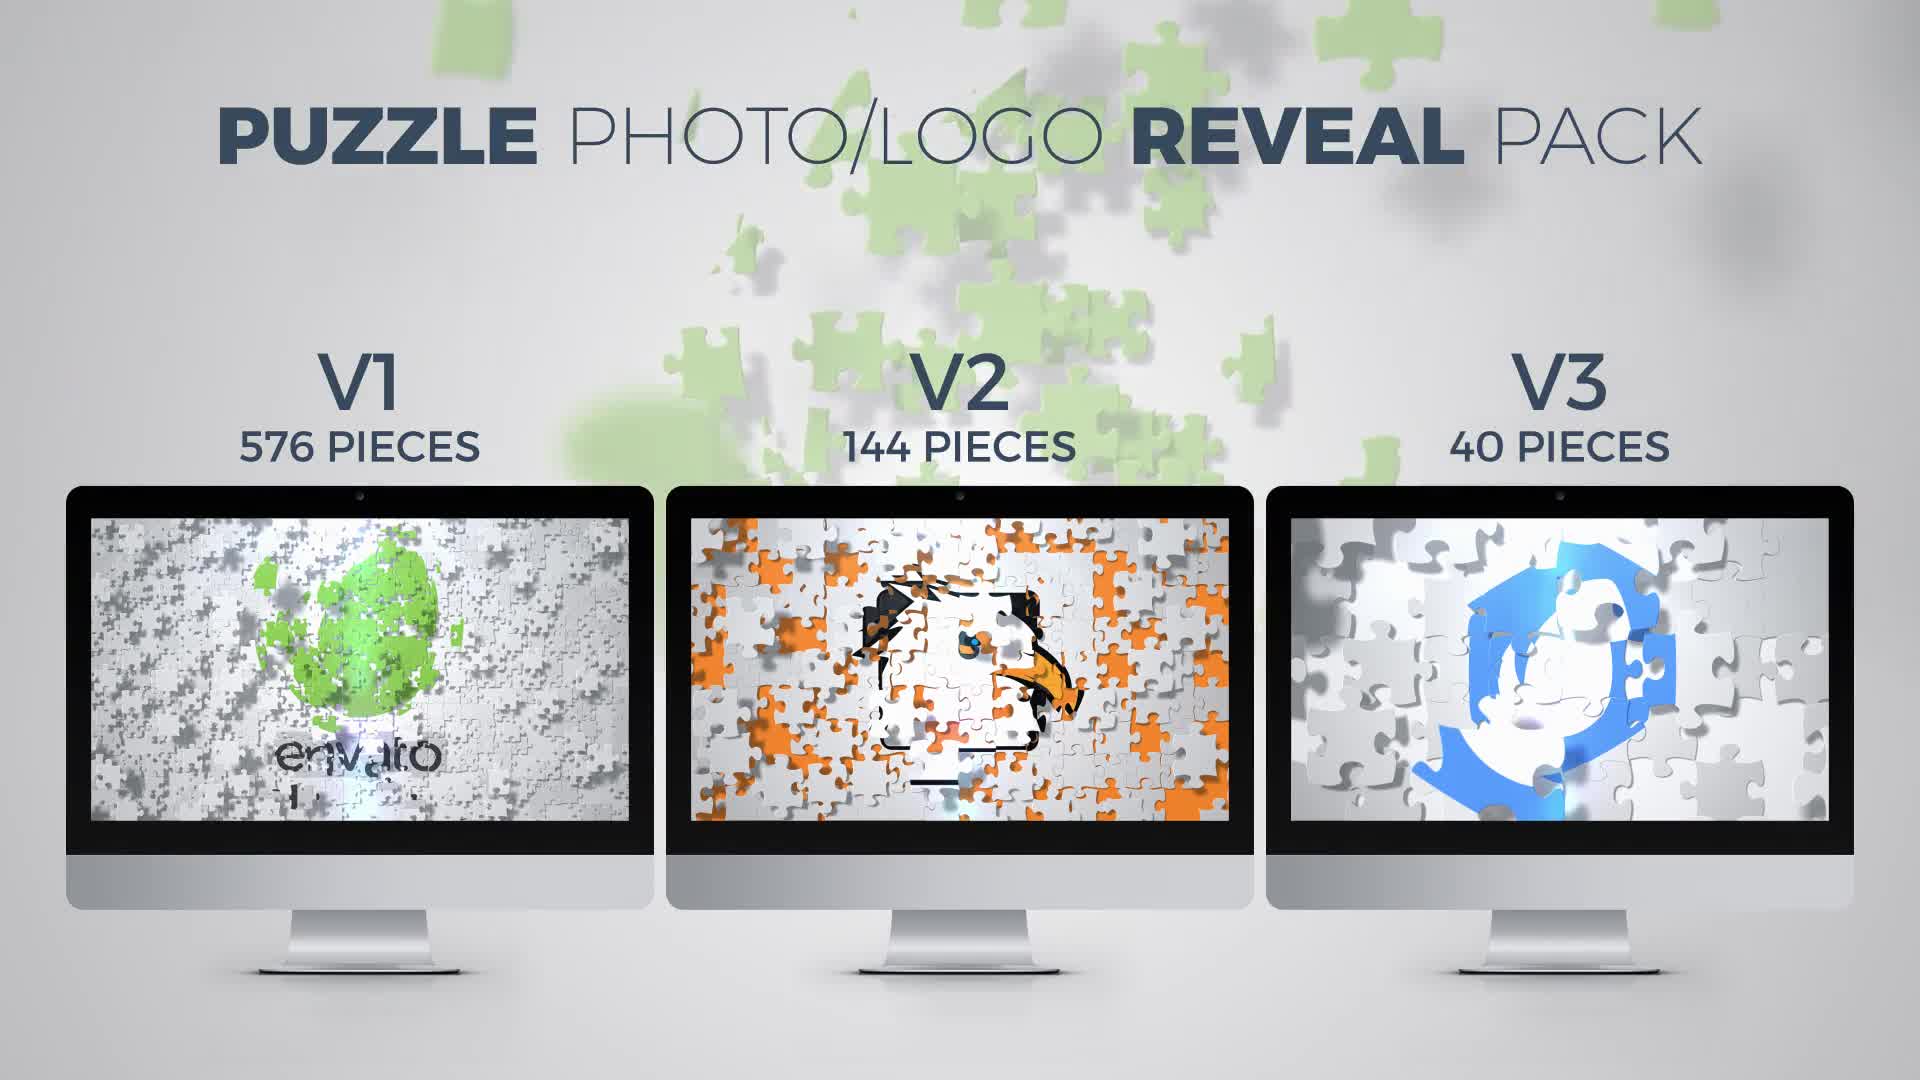 Puzzle Photo / Logo Reveal Pack Premiere Pro Mogrt Project Videohive 35909254 Premiere Pro Image 1